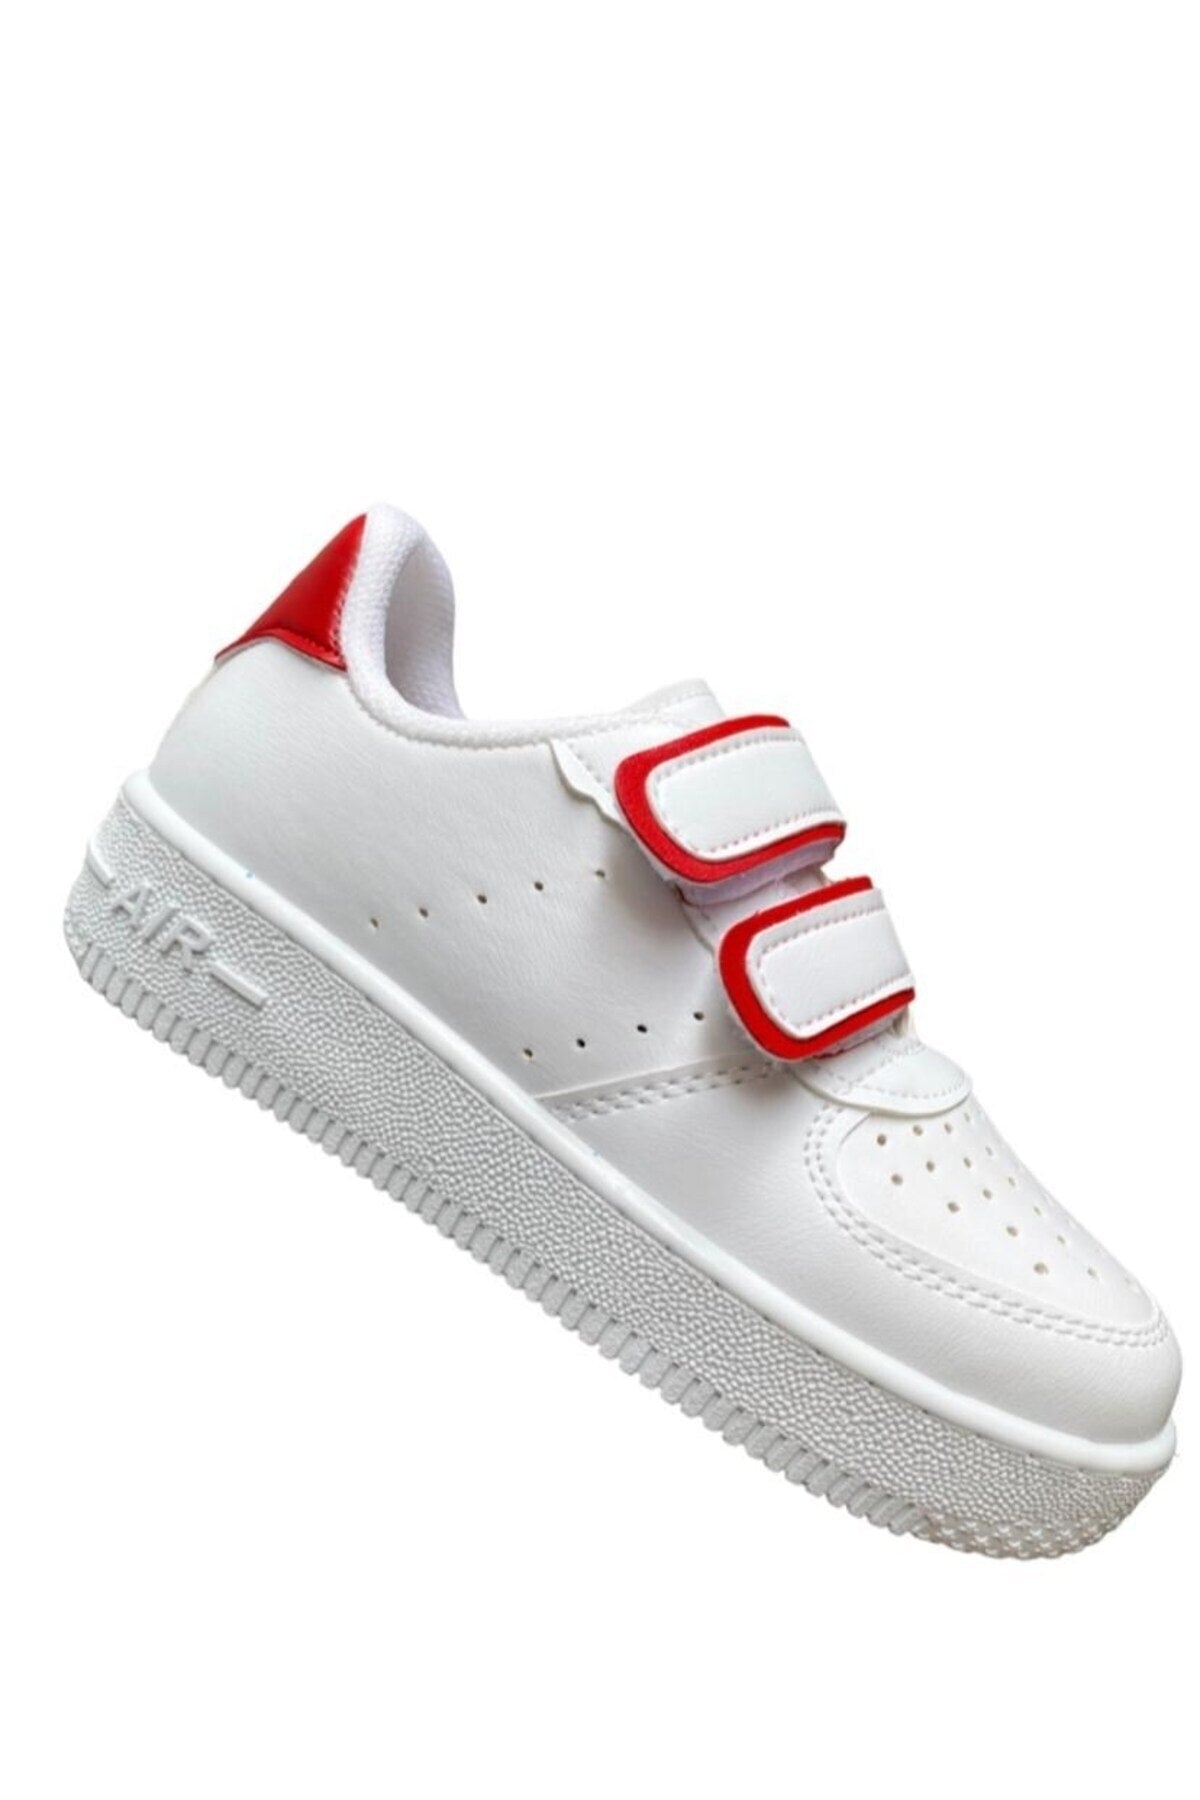 Unisex Girls Boys Velcro Sneakers Sneaker - White Red